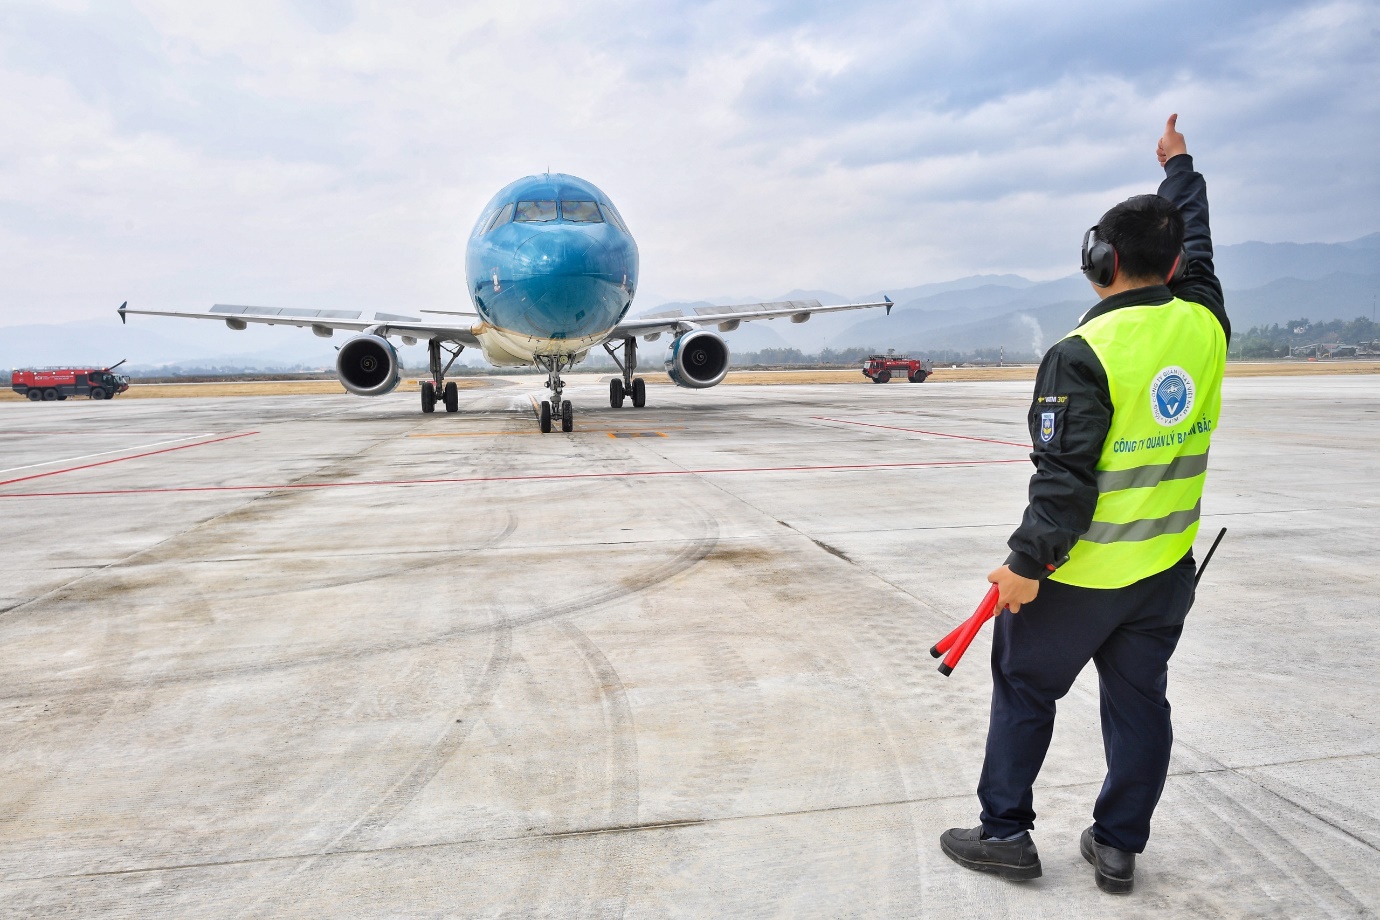 Lần đầu tiên trong lịch sử, sân bay Điện Biên chính thức đón máy bay cỡ lớn Airbus A321 - Ảnh 4.